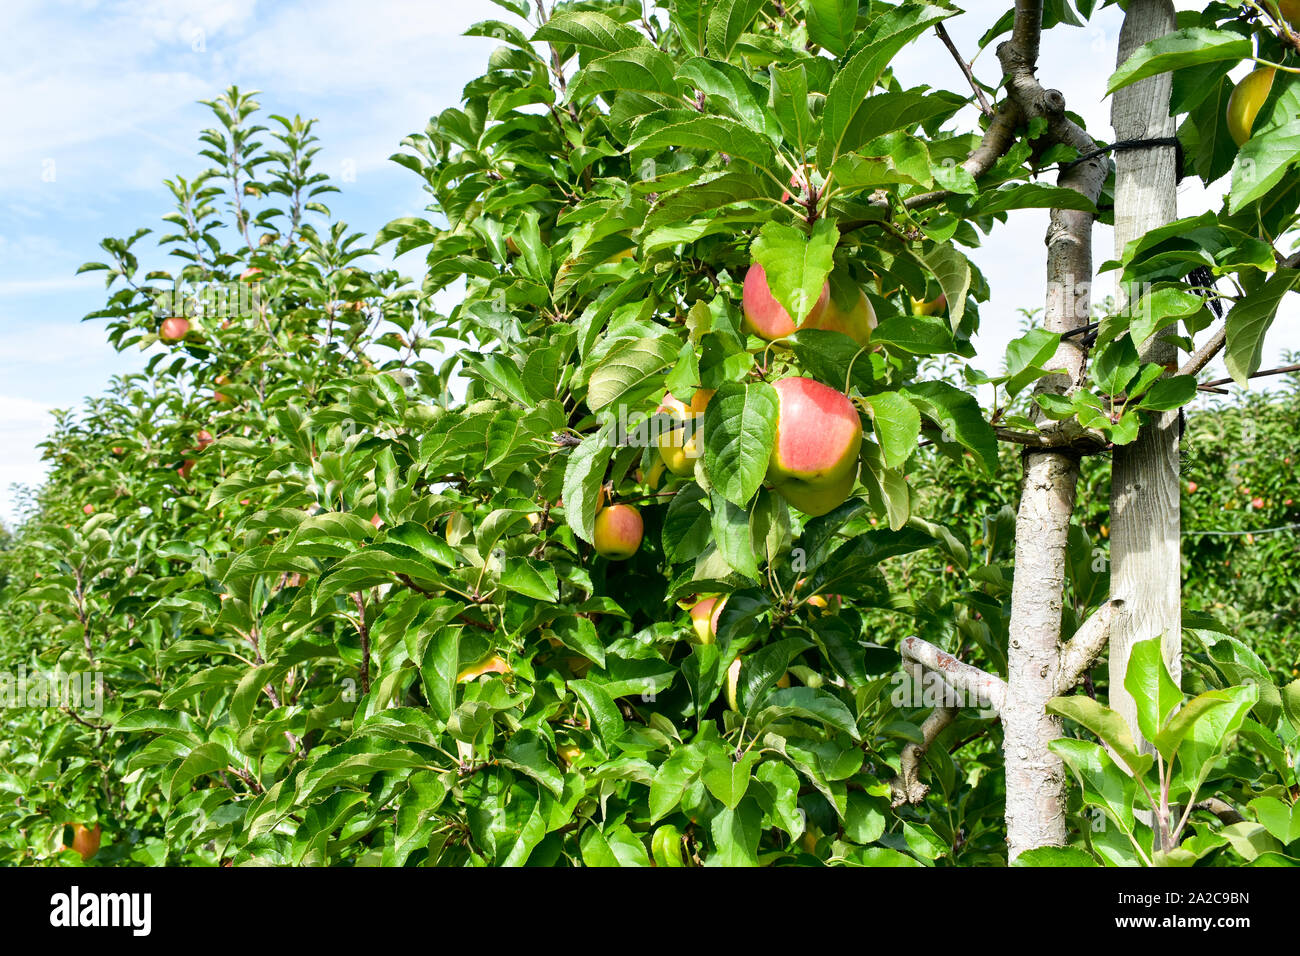 Manzanas maduras fresco sobre la rama de un árbol de manzanas en el jardín. Foto de stock